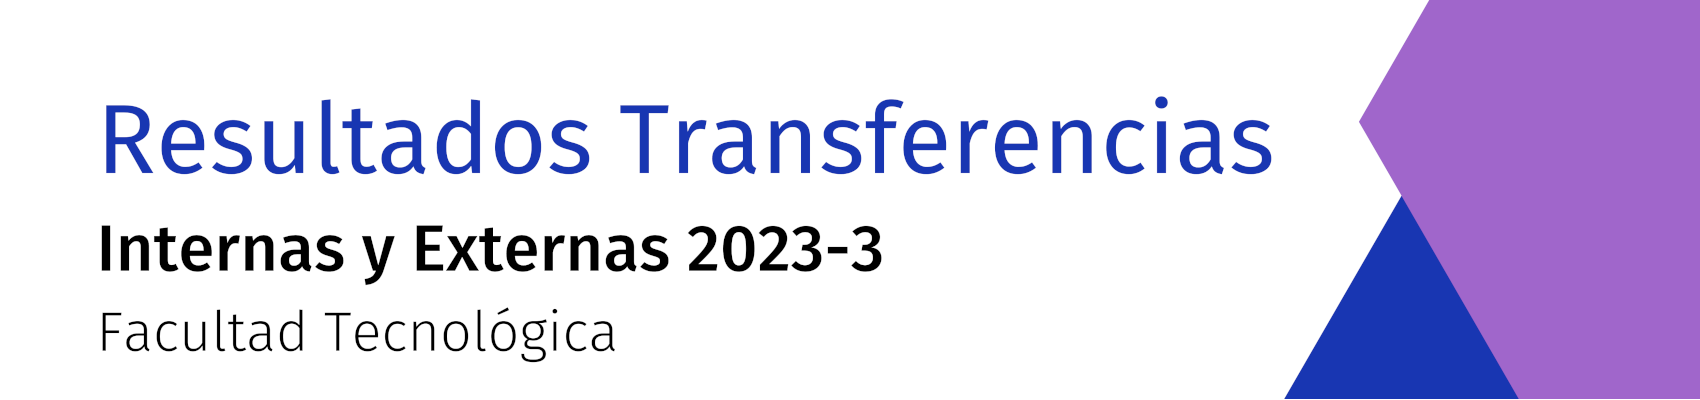 Transferencias Internas y Externas 2023-3